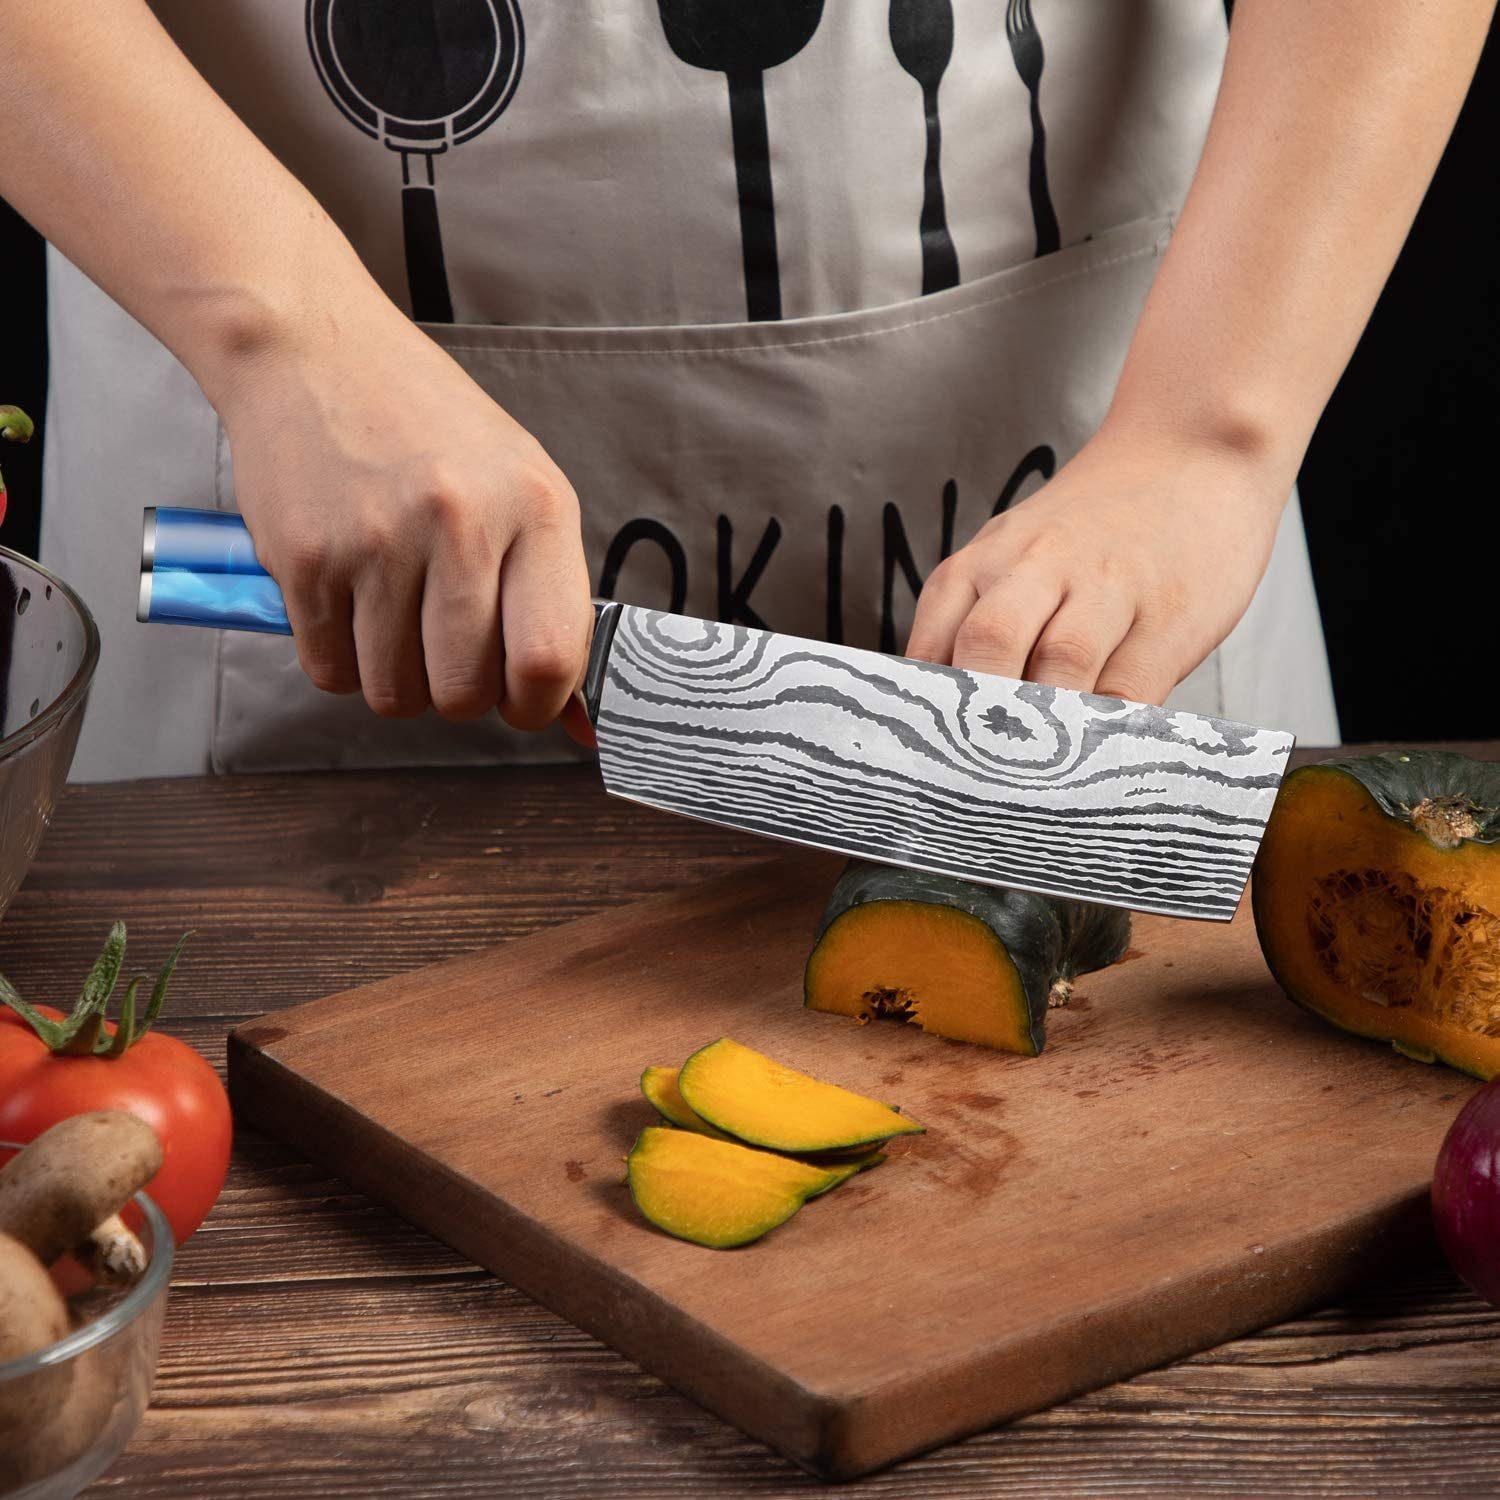 Home safety Küchenmesser, Hackmesser Hackmesser klingenstahl Nakirimesser aus hochwertigem Hackbeil 17cm Kochmesser